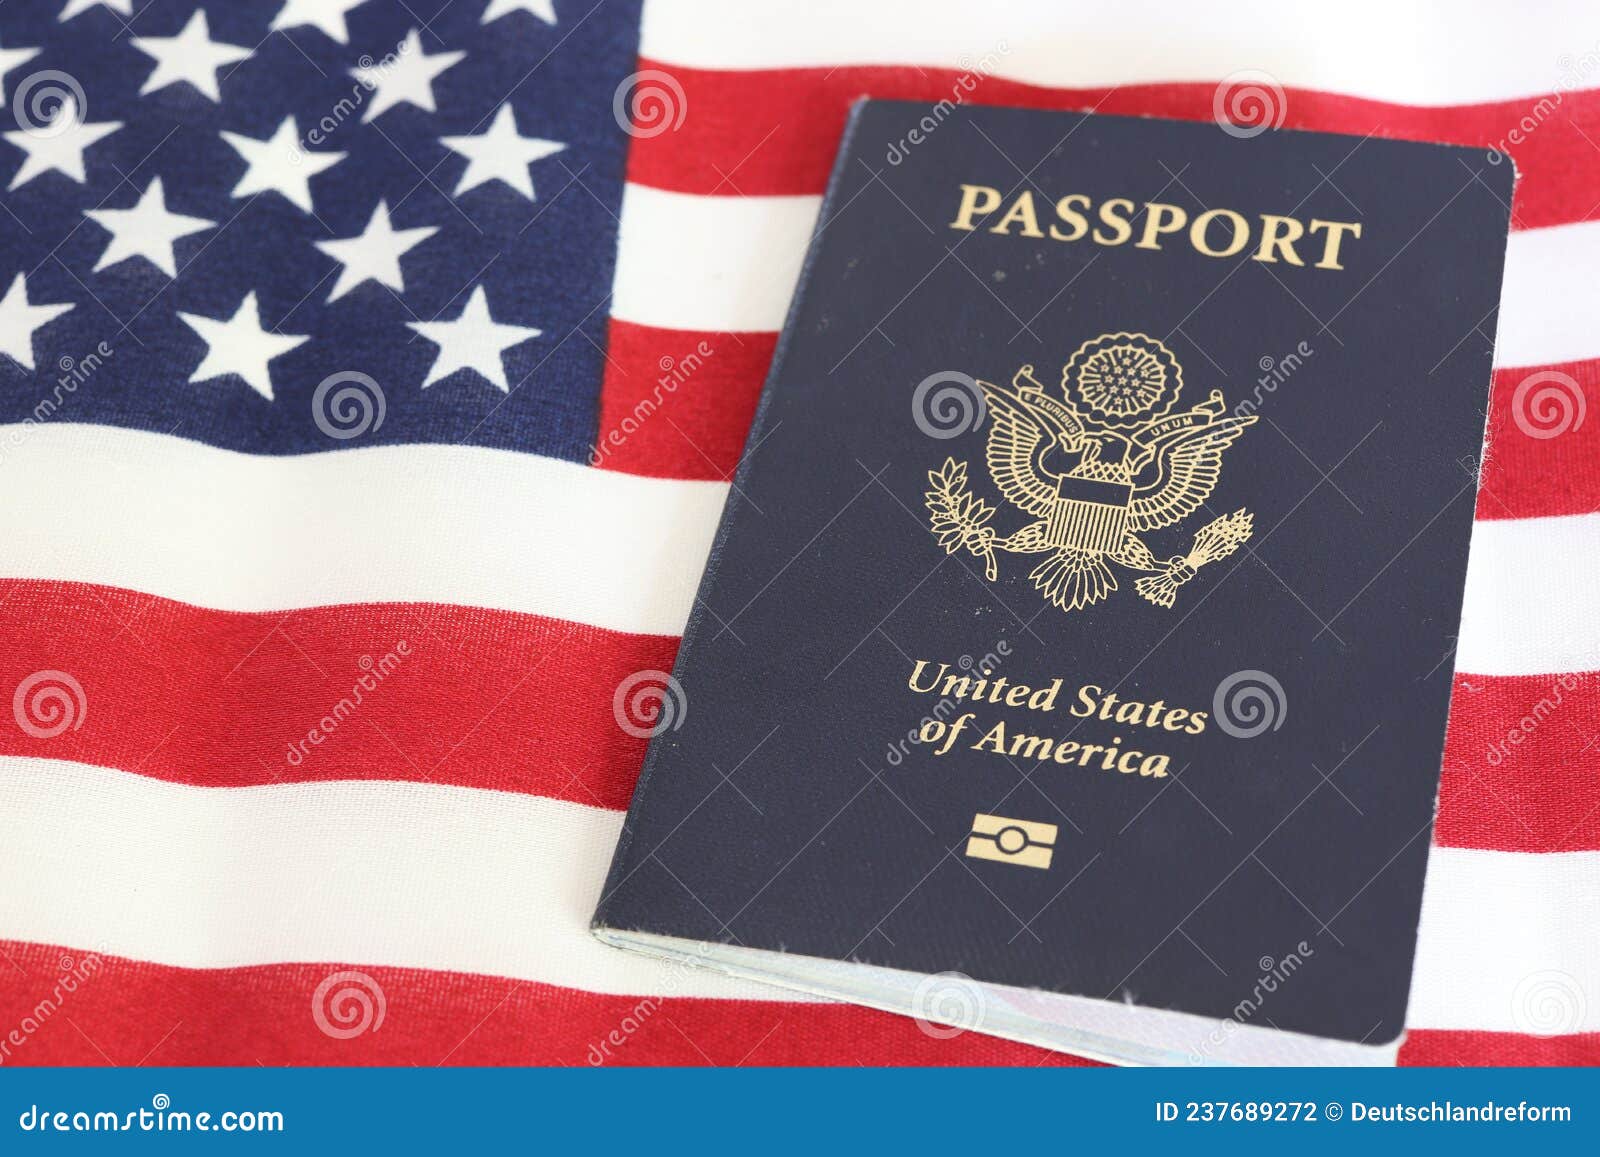 美国护照认证样本 | 中国领事代理服务中心